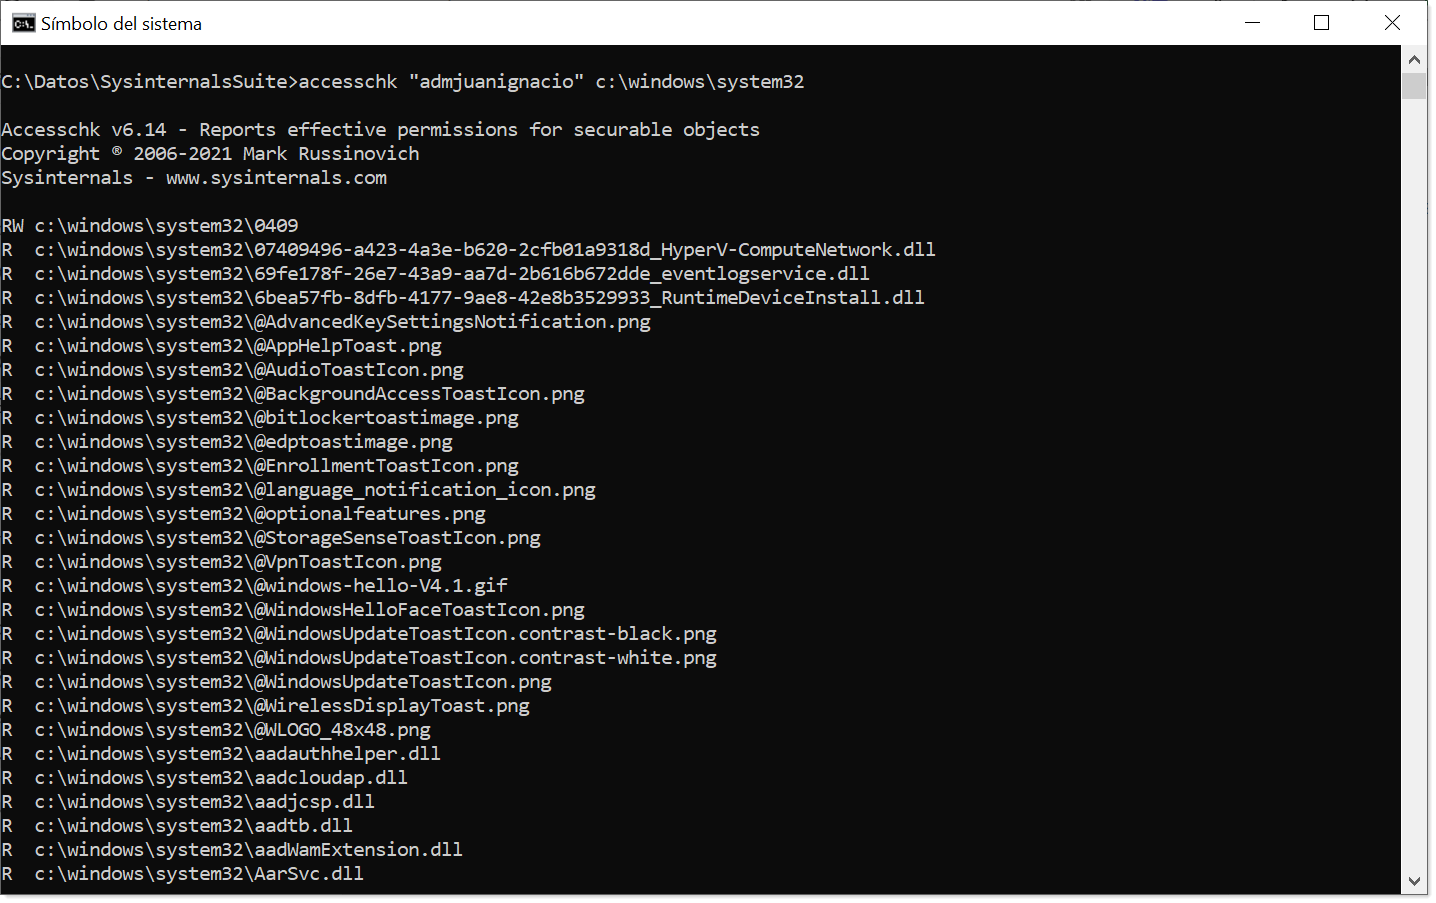 Imagem: teste de acesso do utilizador a “c:\windows\system32” com accesschk